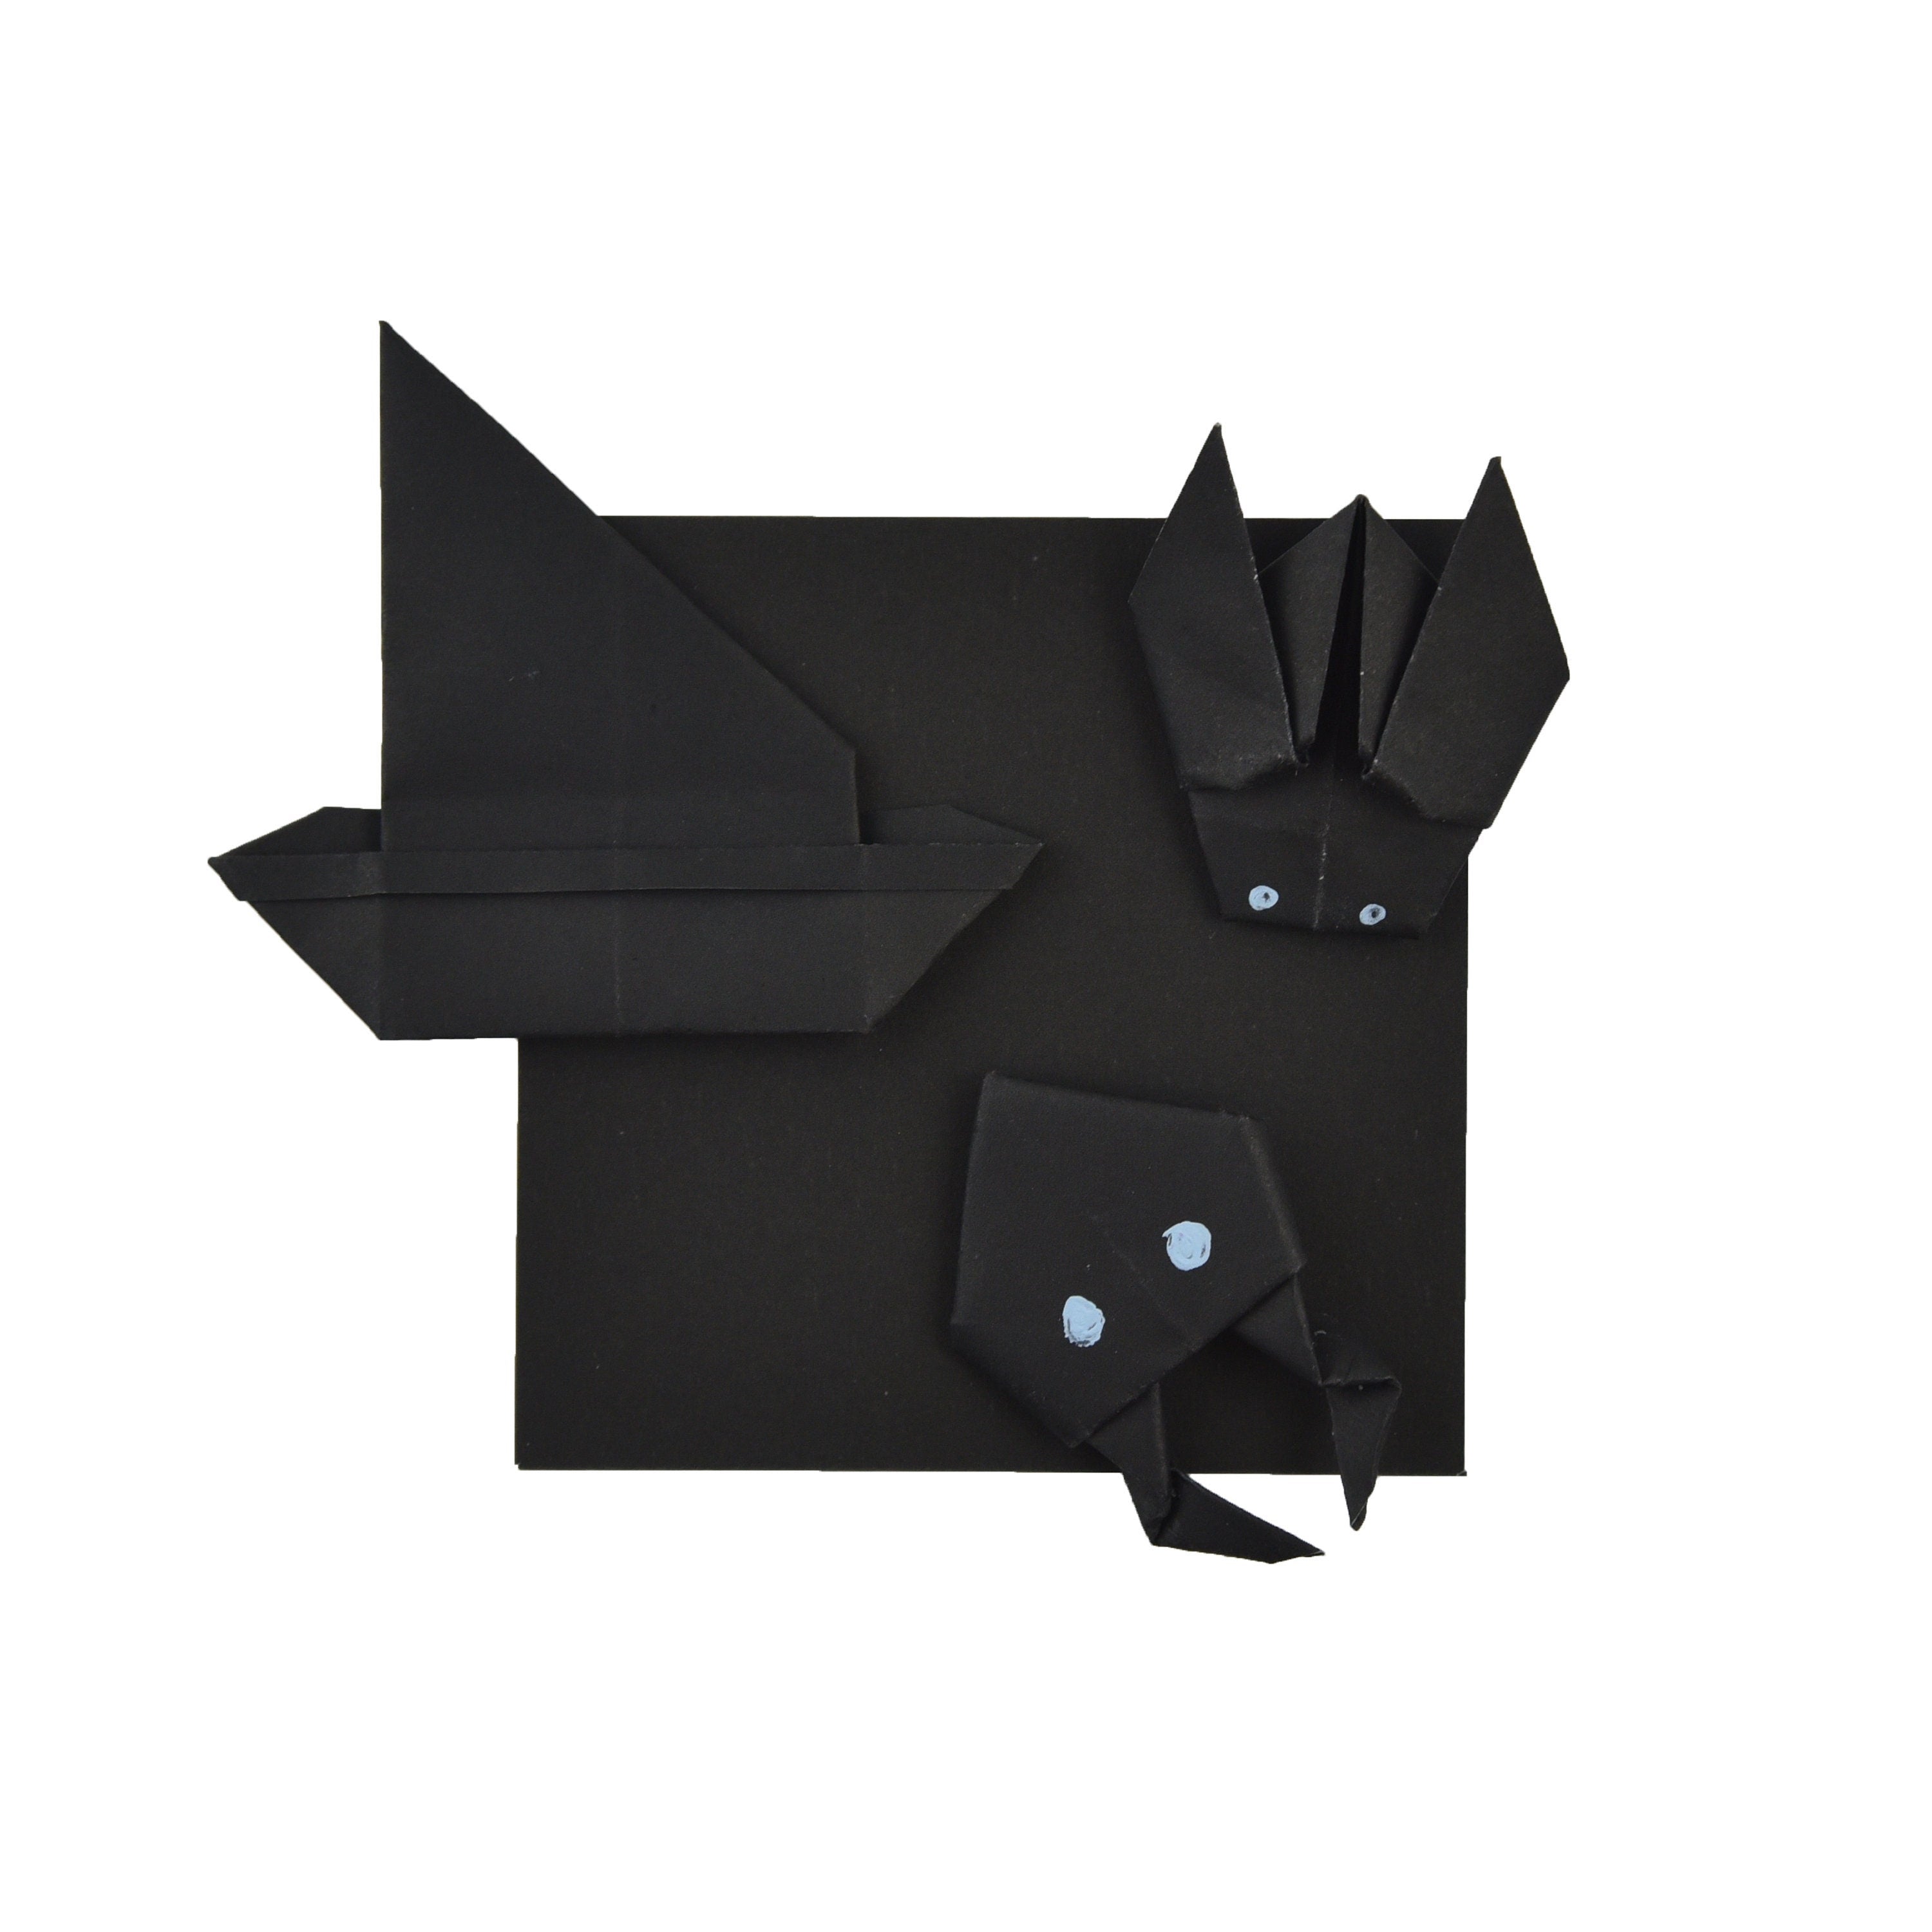 100 fogli di carta origami neri - 3x3 pollici - Confezione di carta quadrata per piegare, gru origami e decorazioni - S11